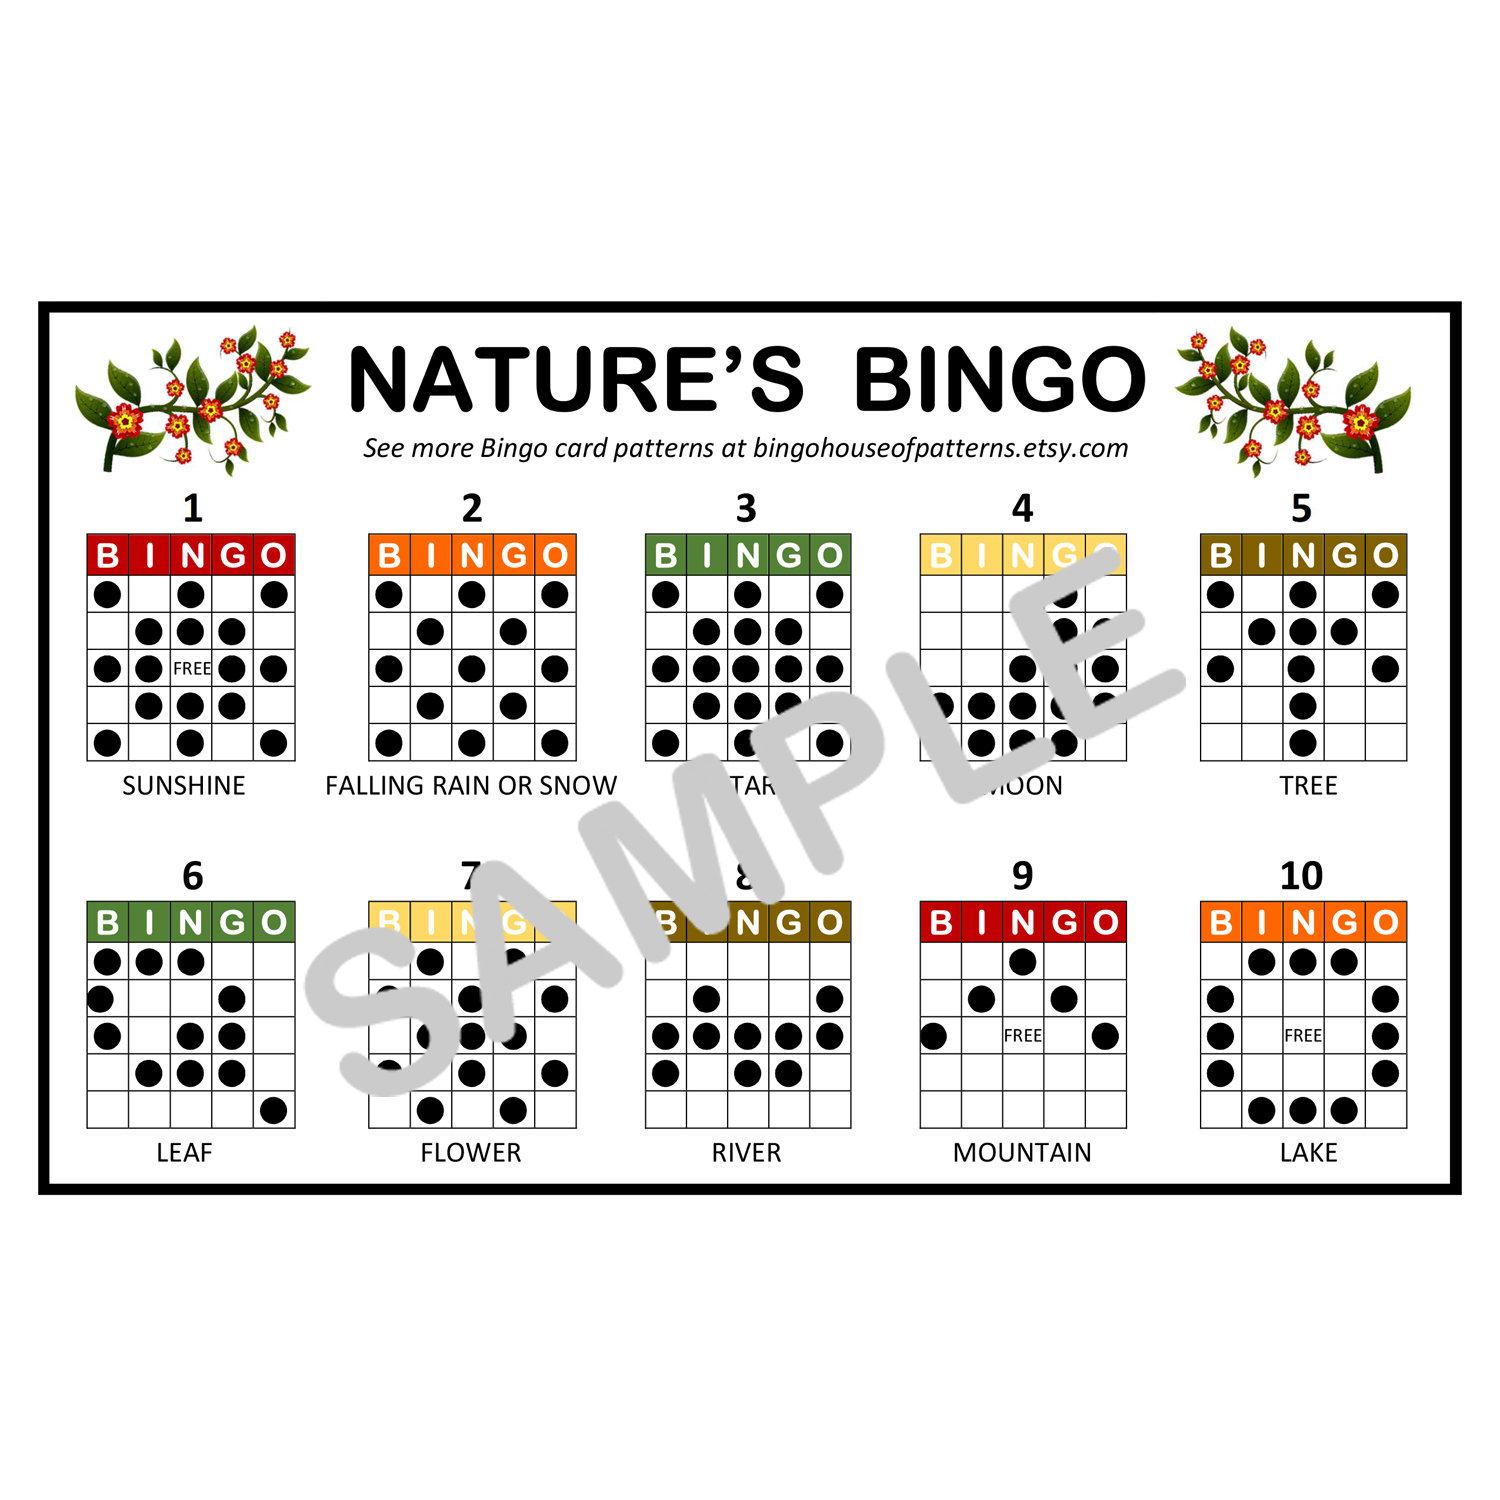 Patrones de bingo clásicos